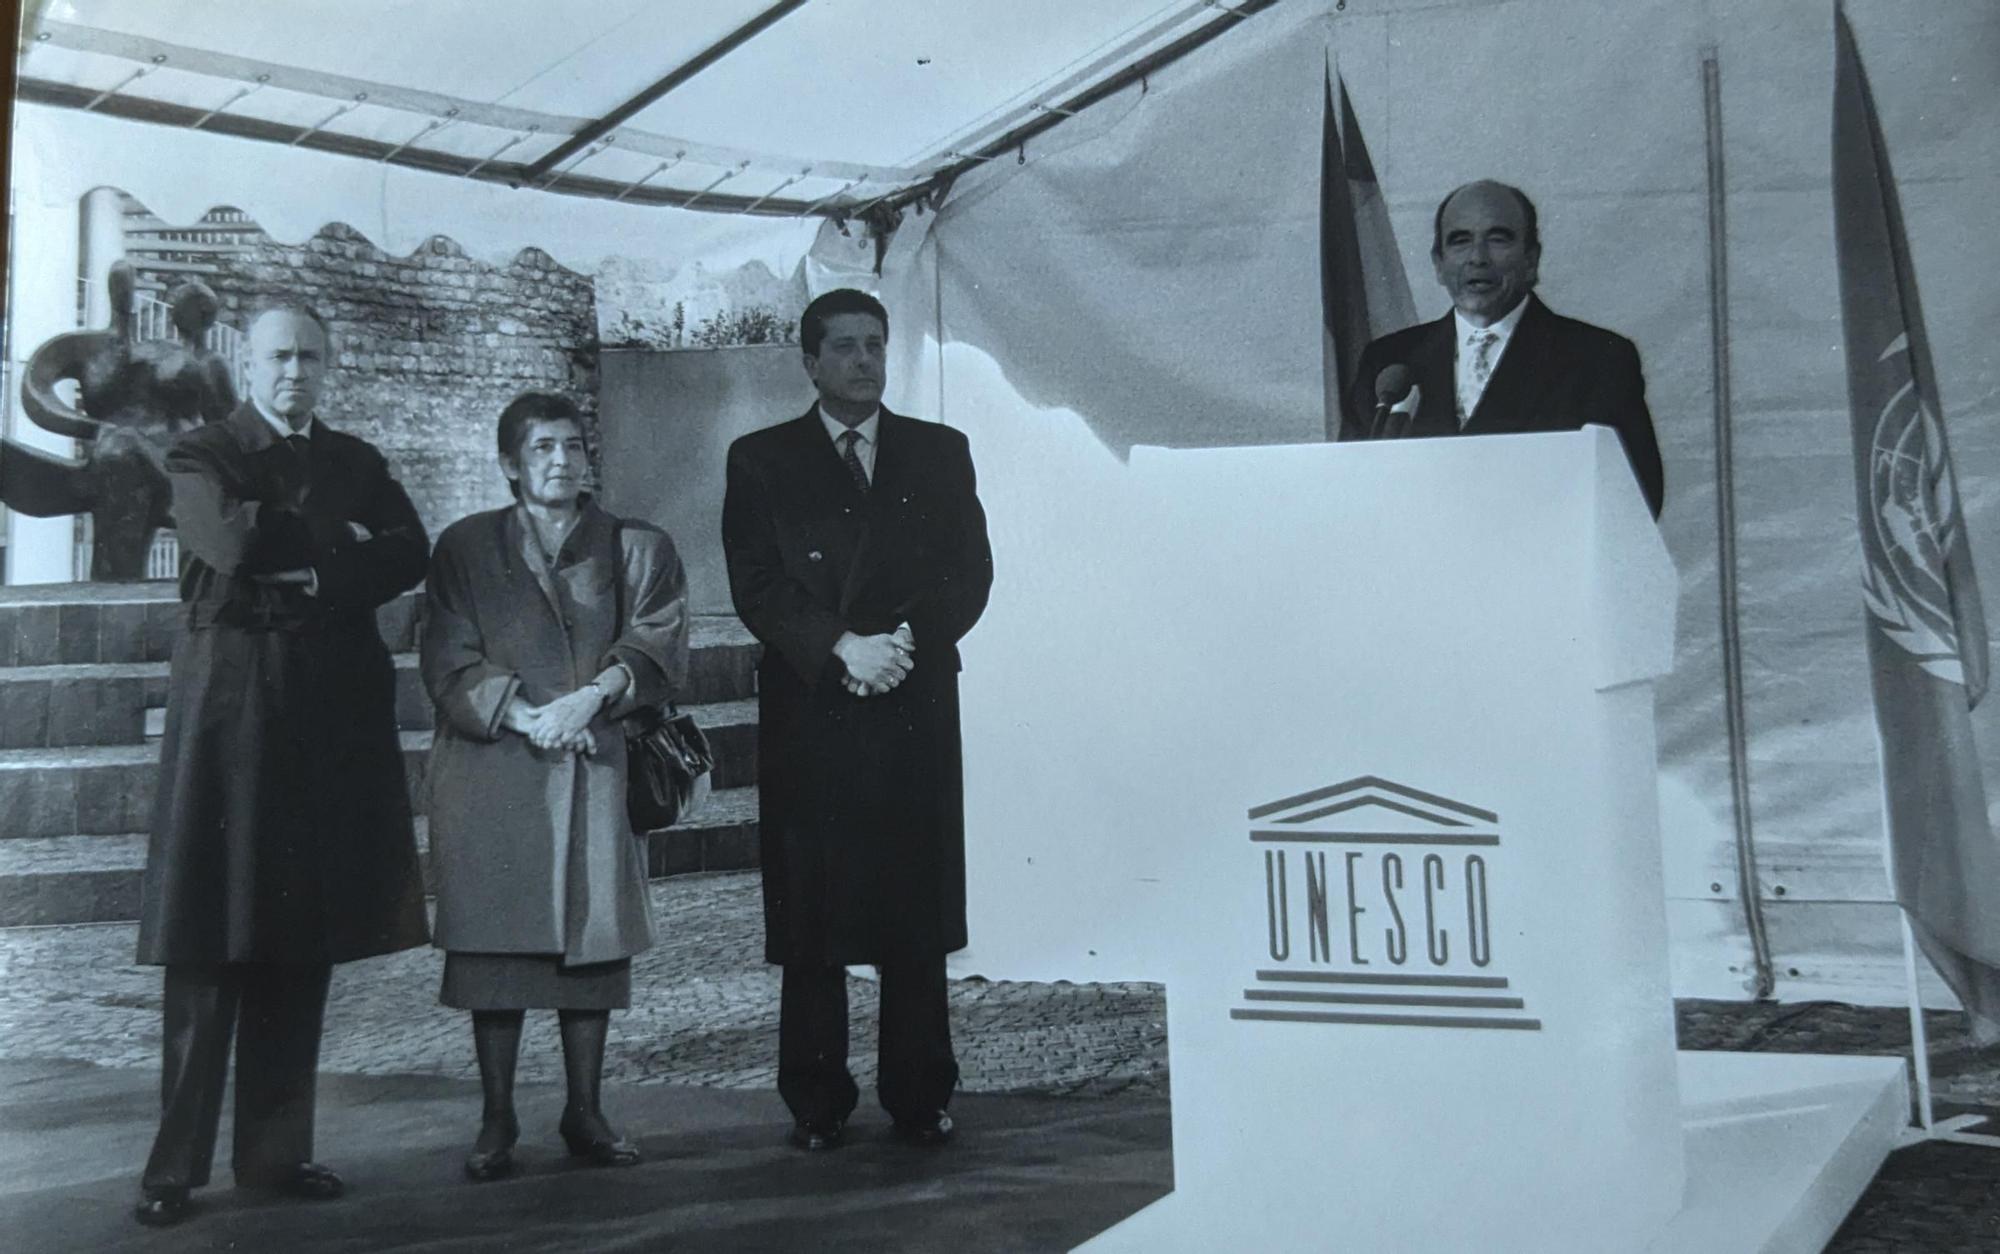 Inauguración de la obra 'Pareja sentada', que decora la sede de la Unesco de París. En la imagen, Emilio Botín, entonces presidente del Banco Santander y mecenas de la donación, acompañado por el entonces director general de la Unesco, Federico Mayor Zaragoza, y la autora, en noviembre de 1993